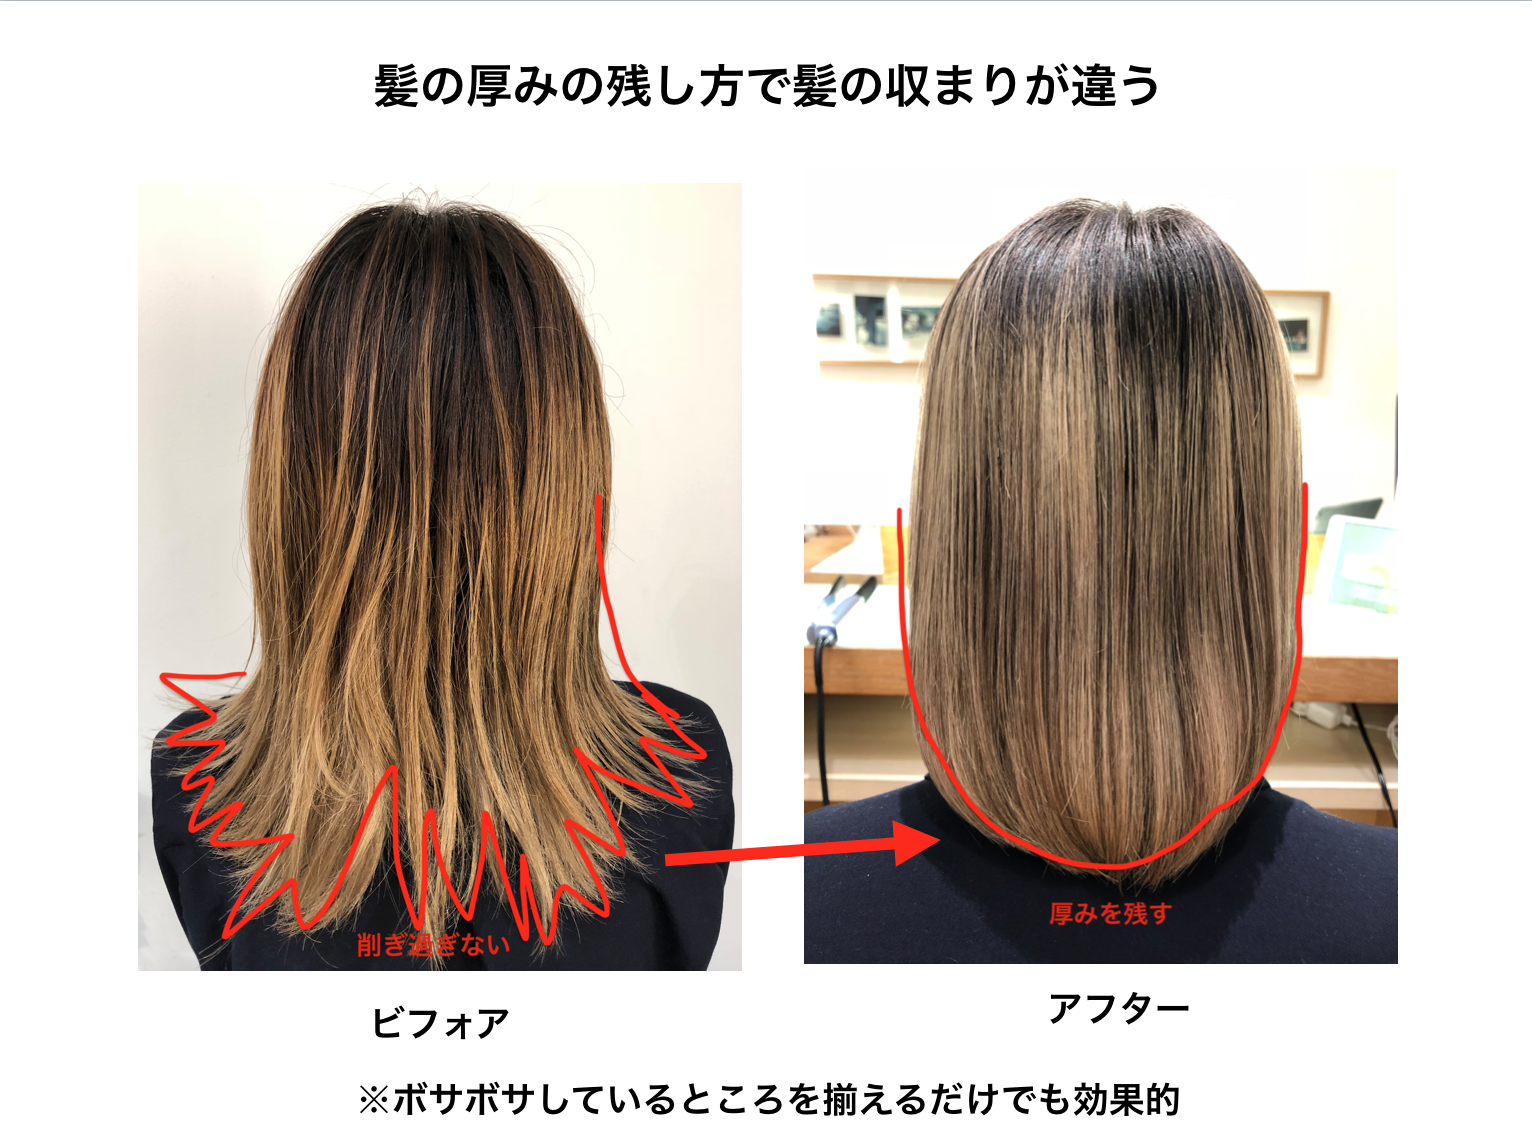 梅雨で髪の毛が広がる原因 髪の毛の梅雨対策 髪のケアについて Oda のブログ